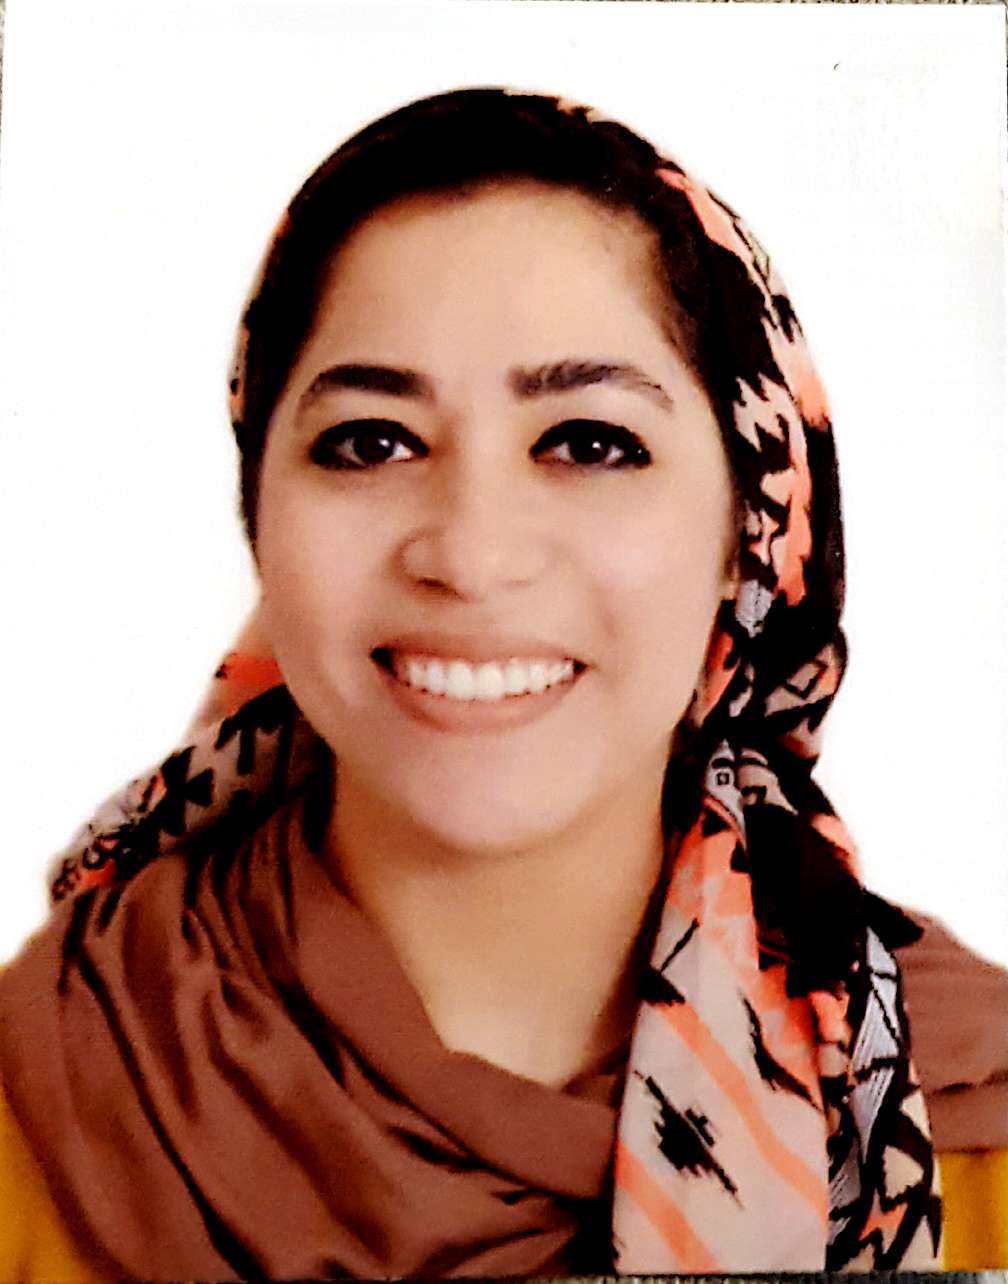 Dr. Nesreen Alaaeldin Abdelrahman